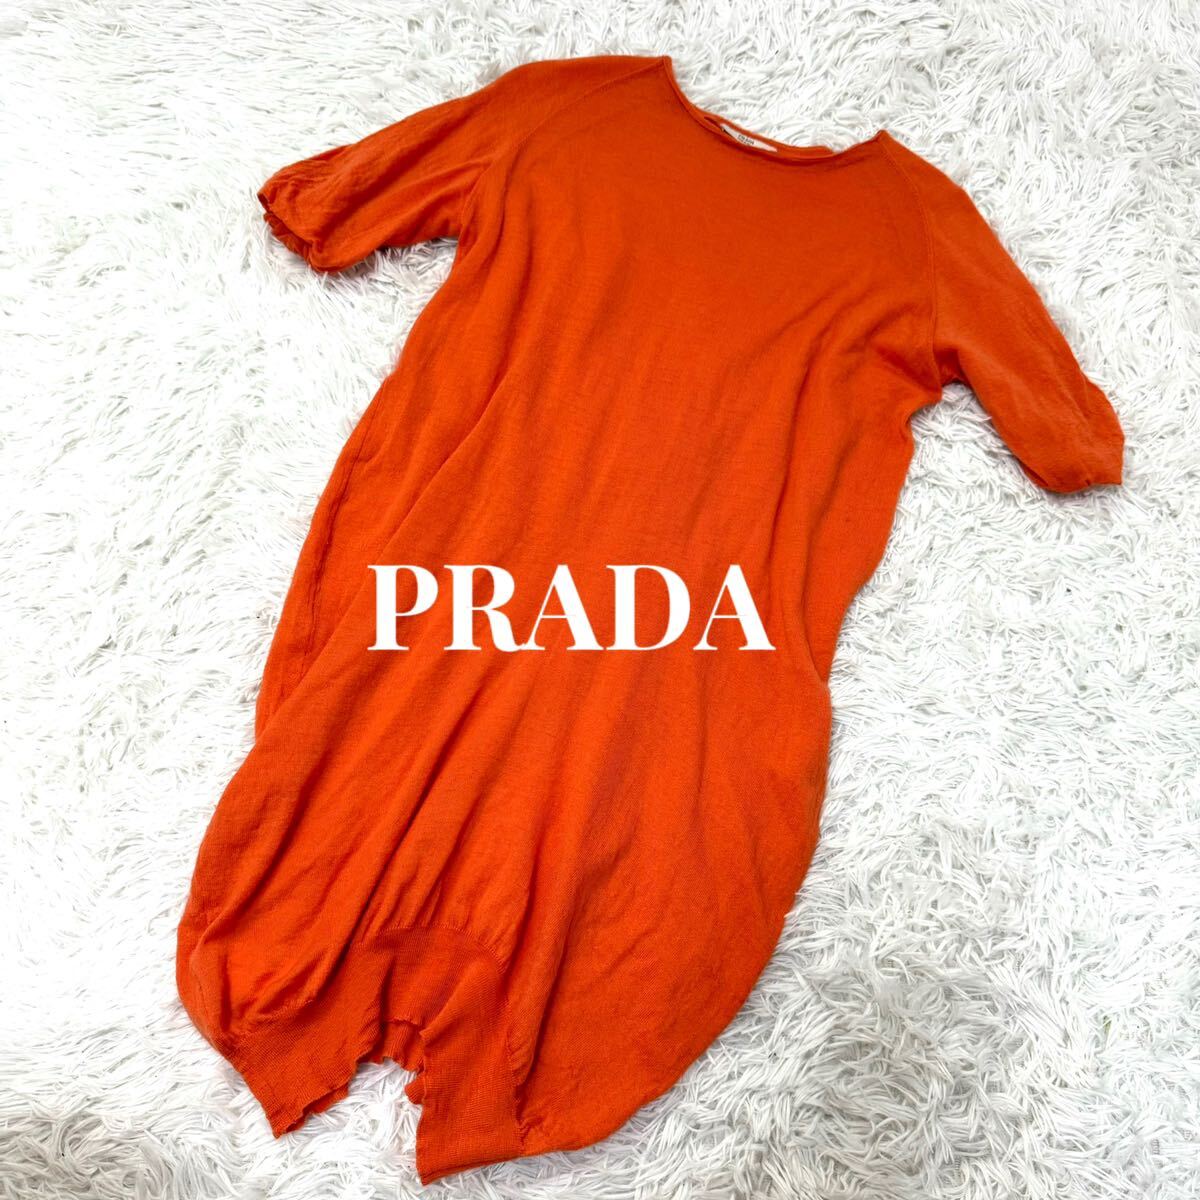  Prada PRADA wool short sleeves knitted T-shirt sweater orange L size 